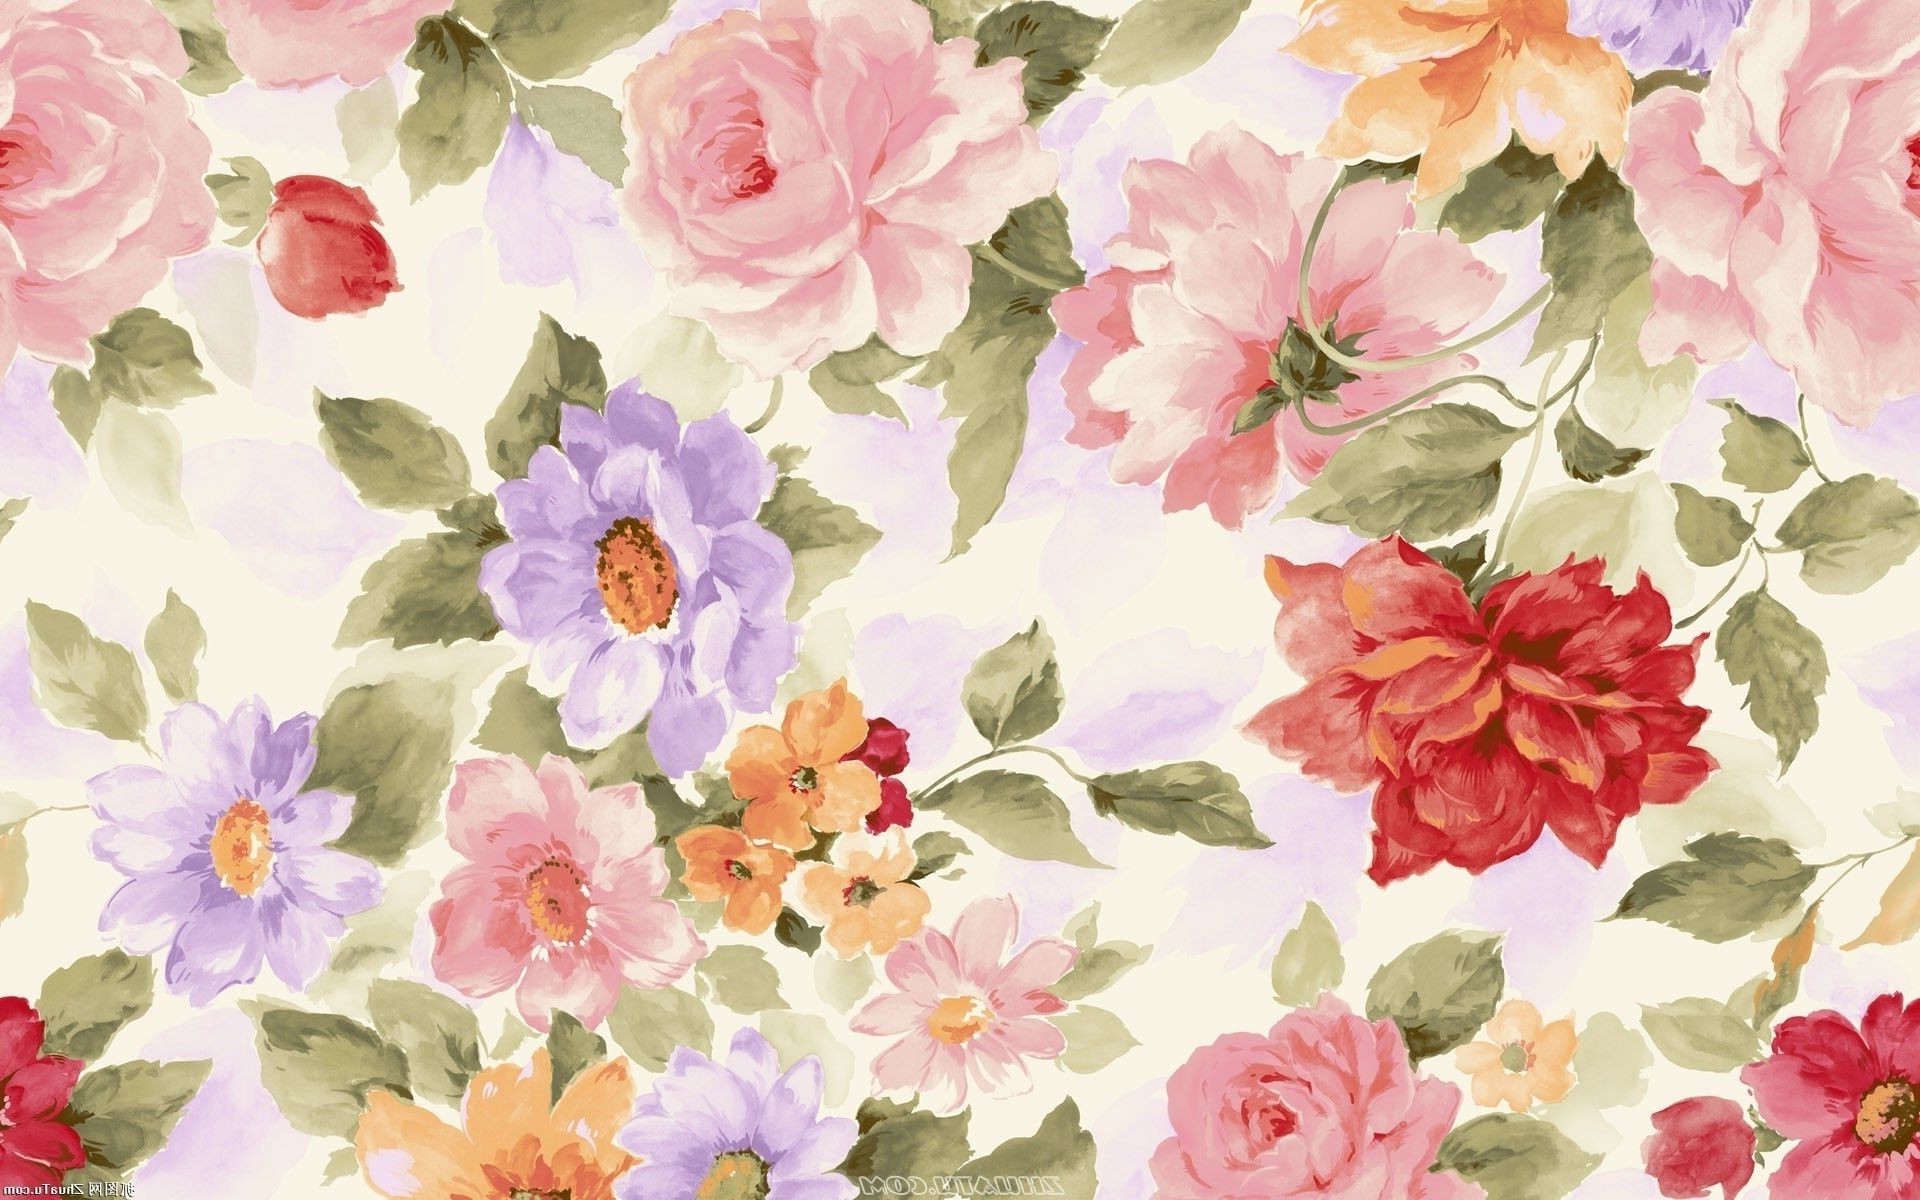 текстуры цветок флора цветочные лист украшения лепесток блюминг цвет букет красивые природа рабочего стола лето роза сад